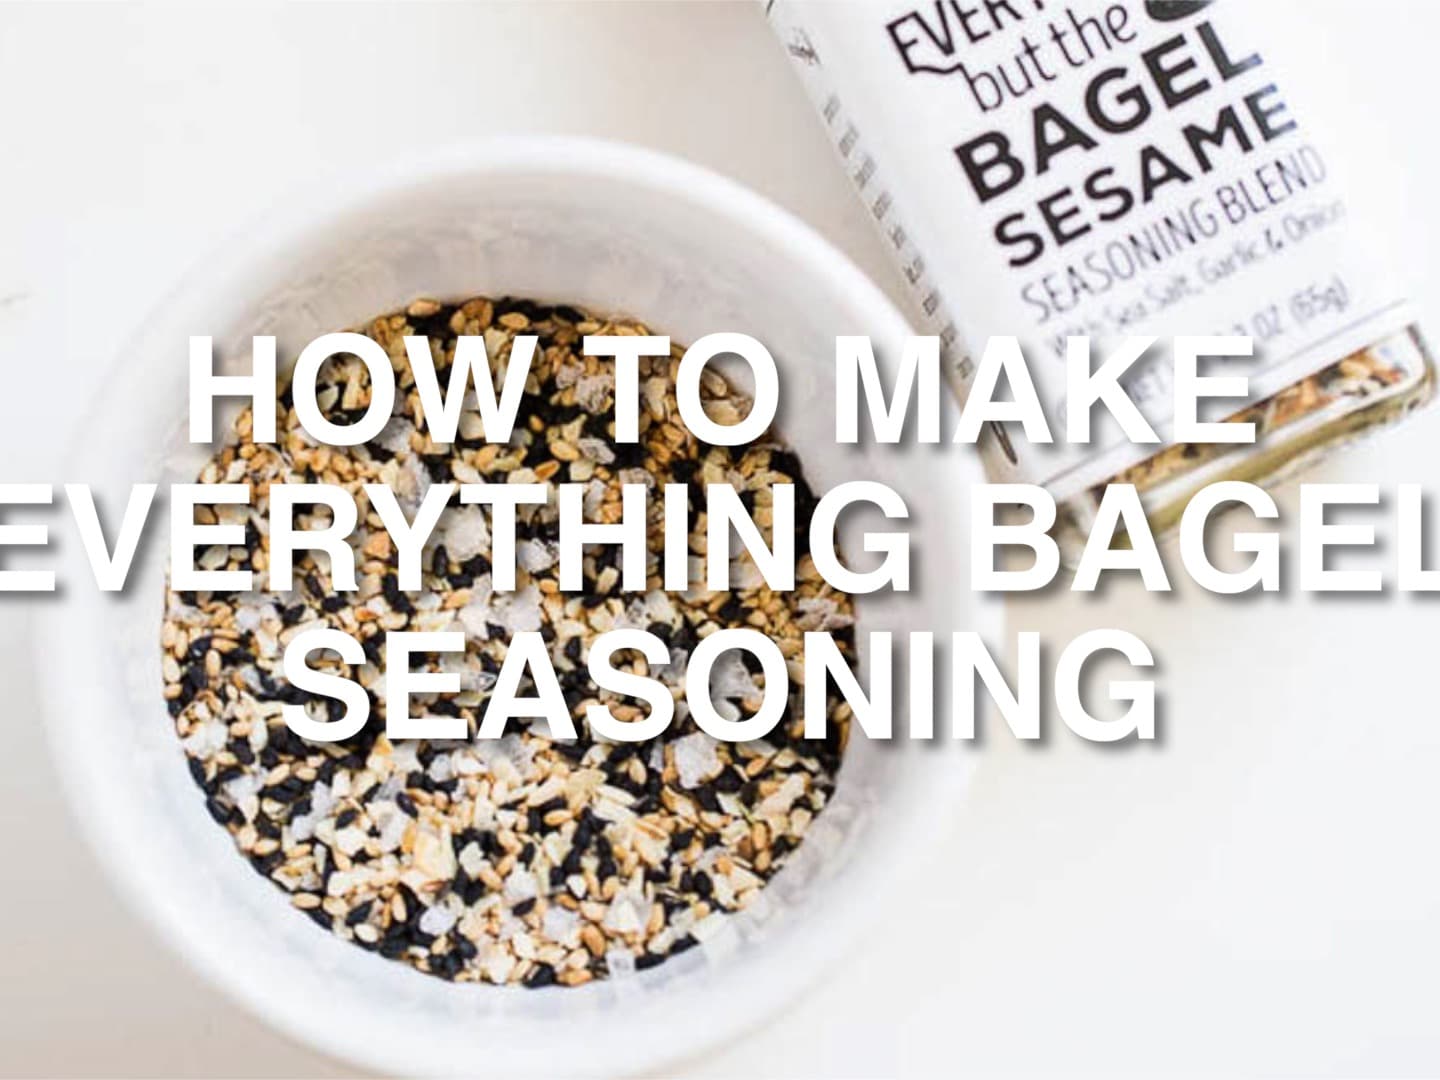 Everything Bagel Seasoning - The Daring Gourmet